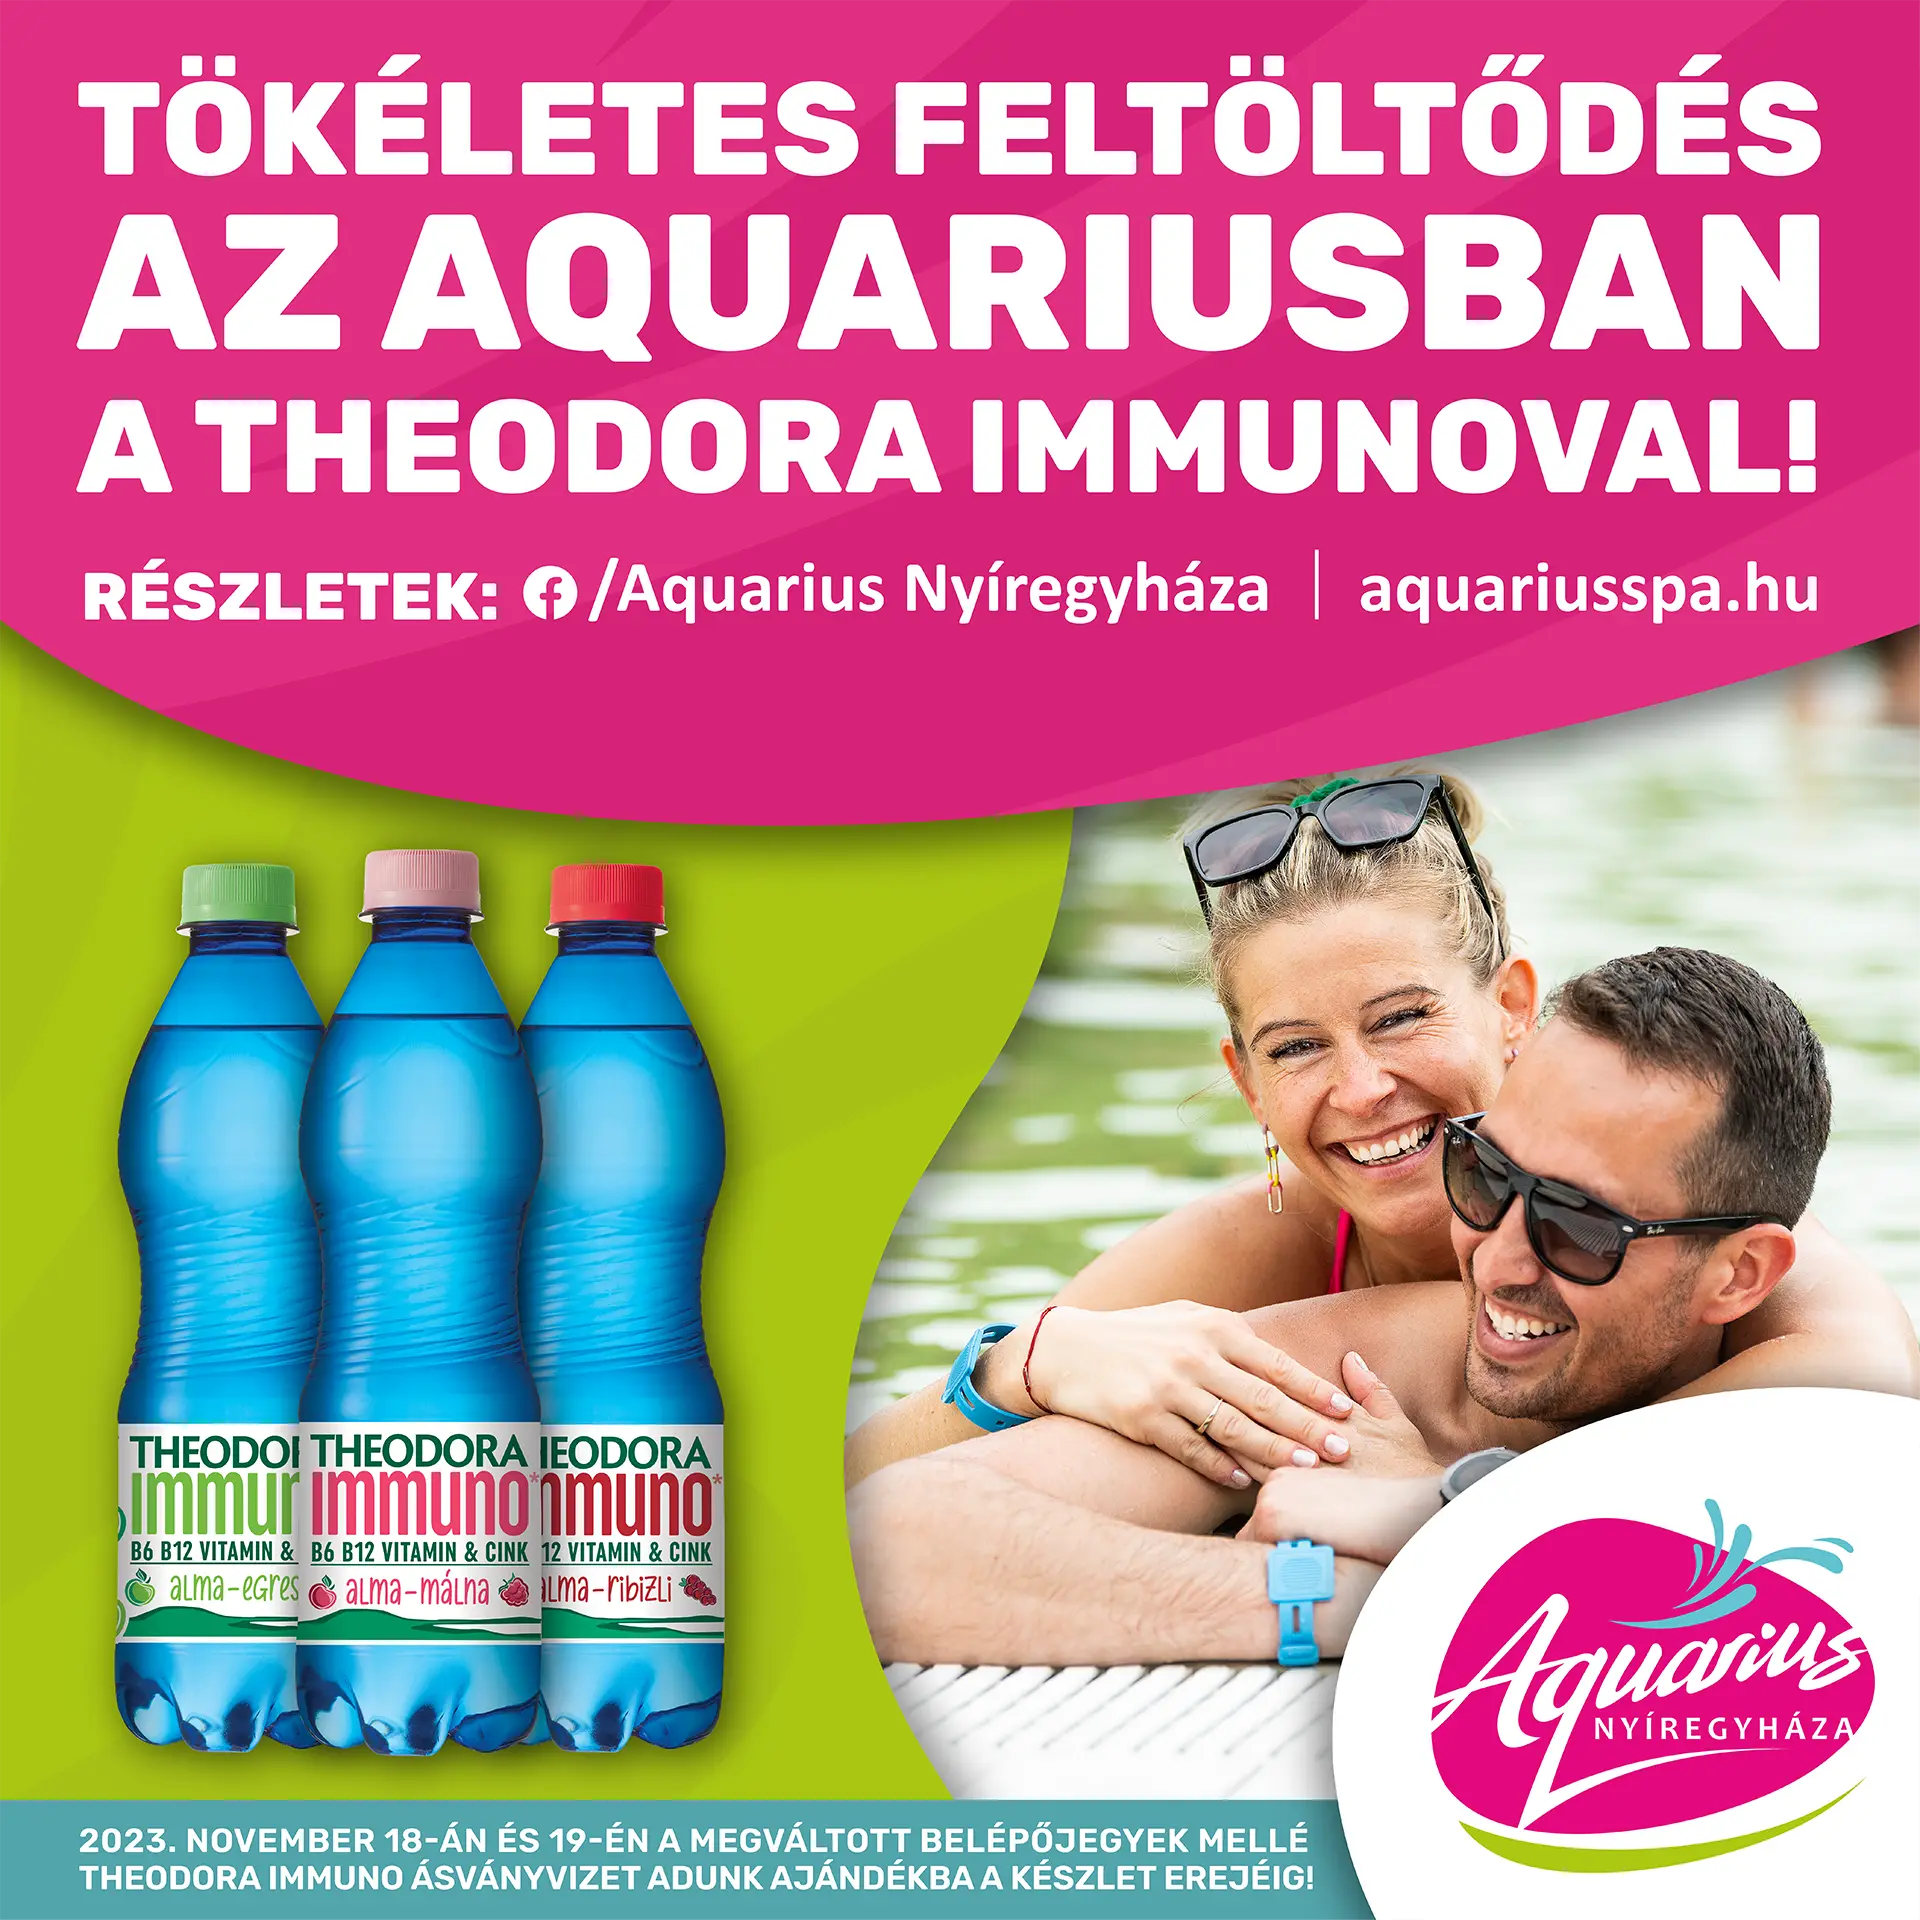 tokeletes-feltoltodes-theodora-immunoval-az-aquariusban-hd